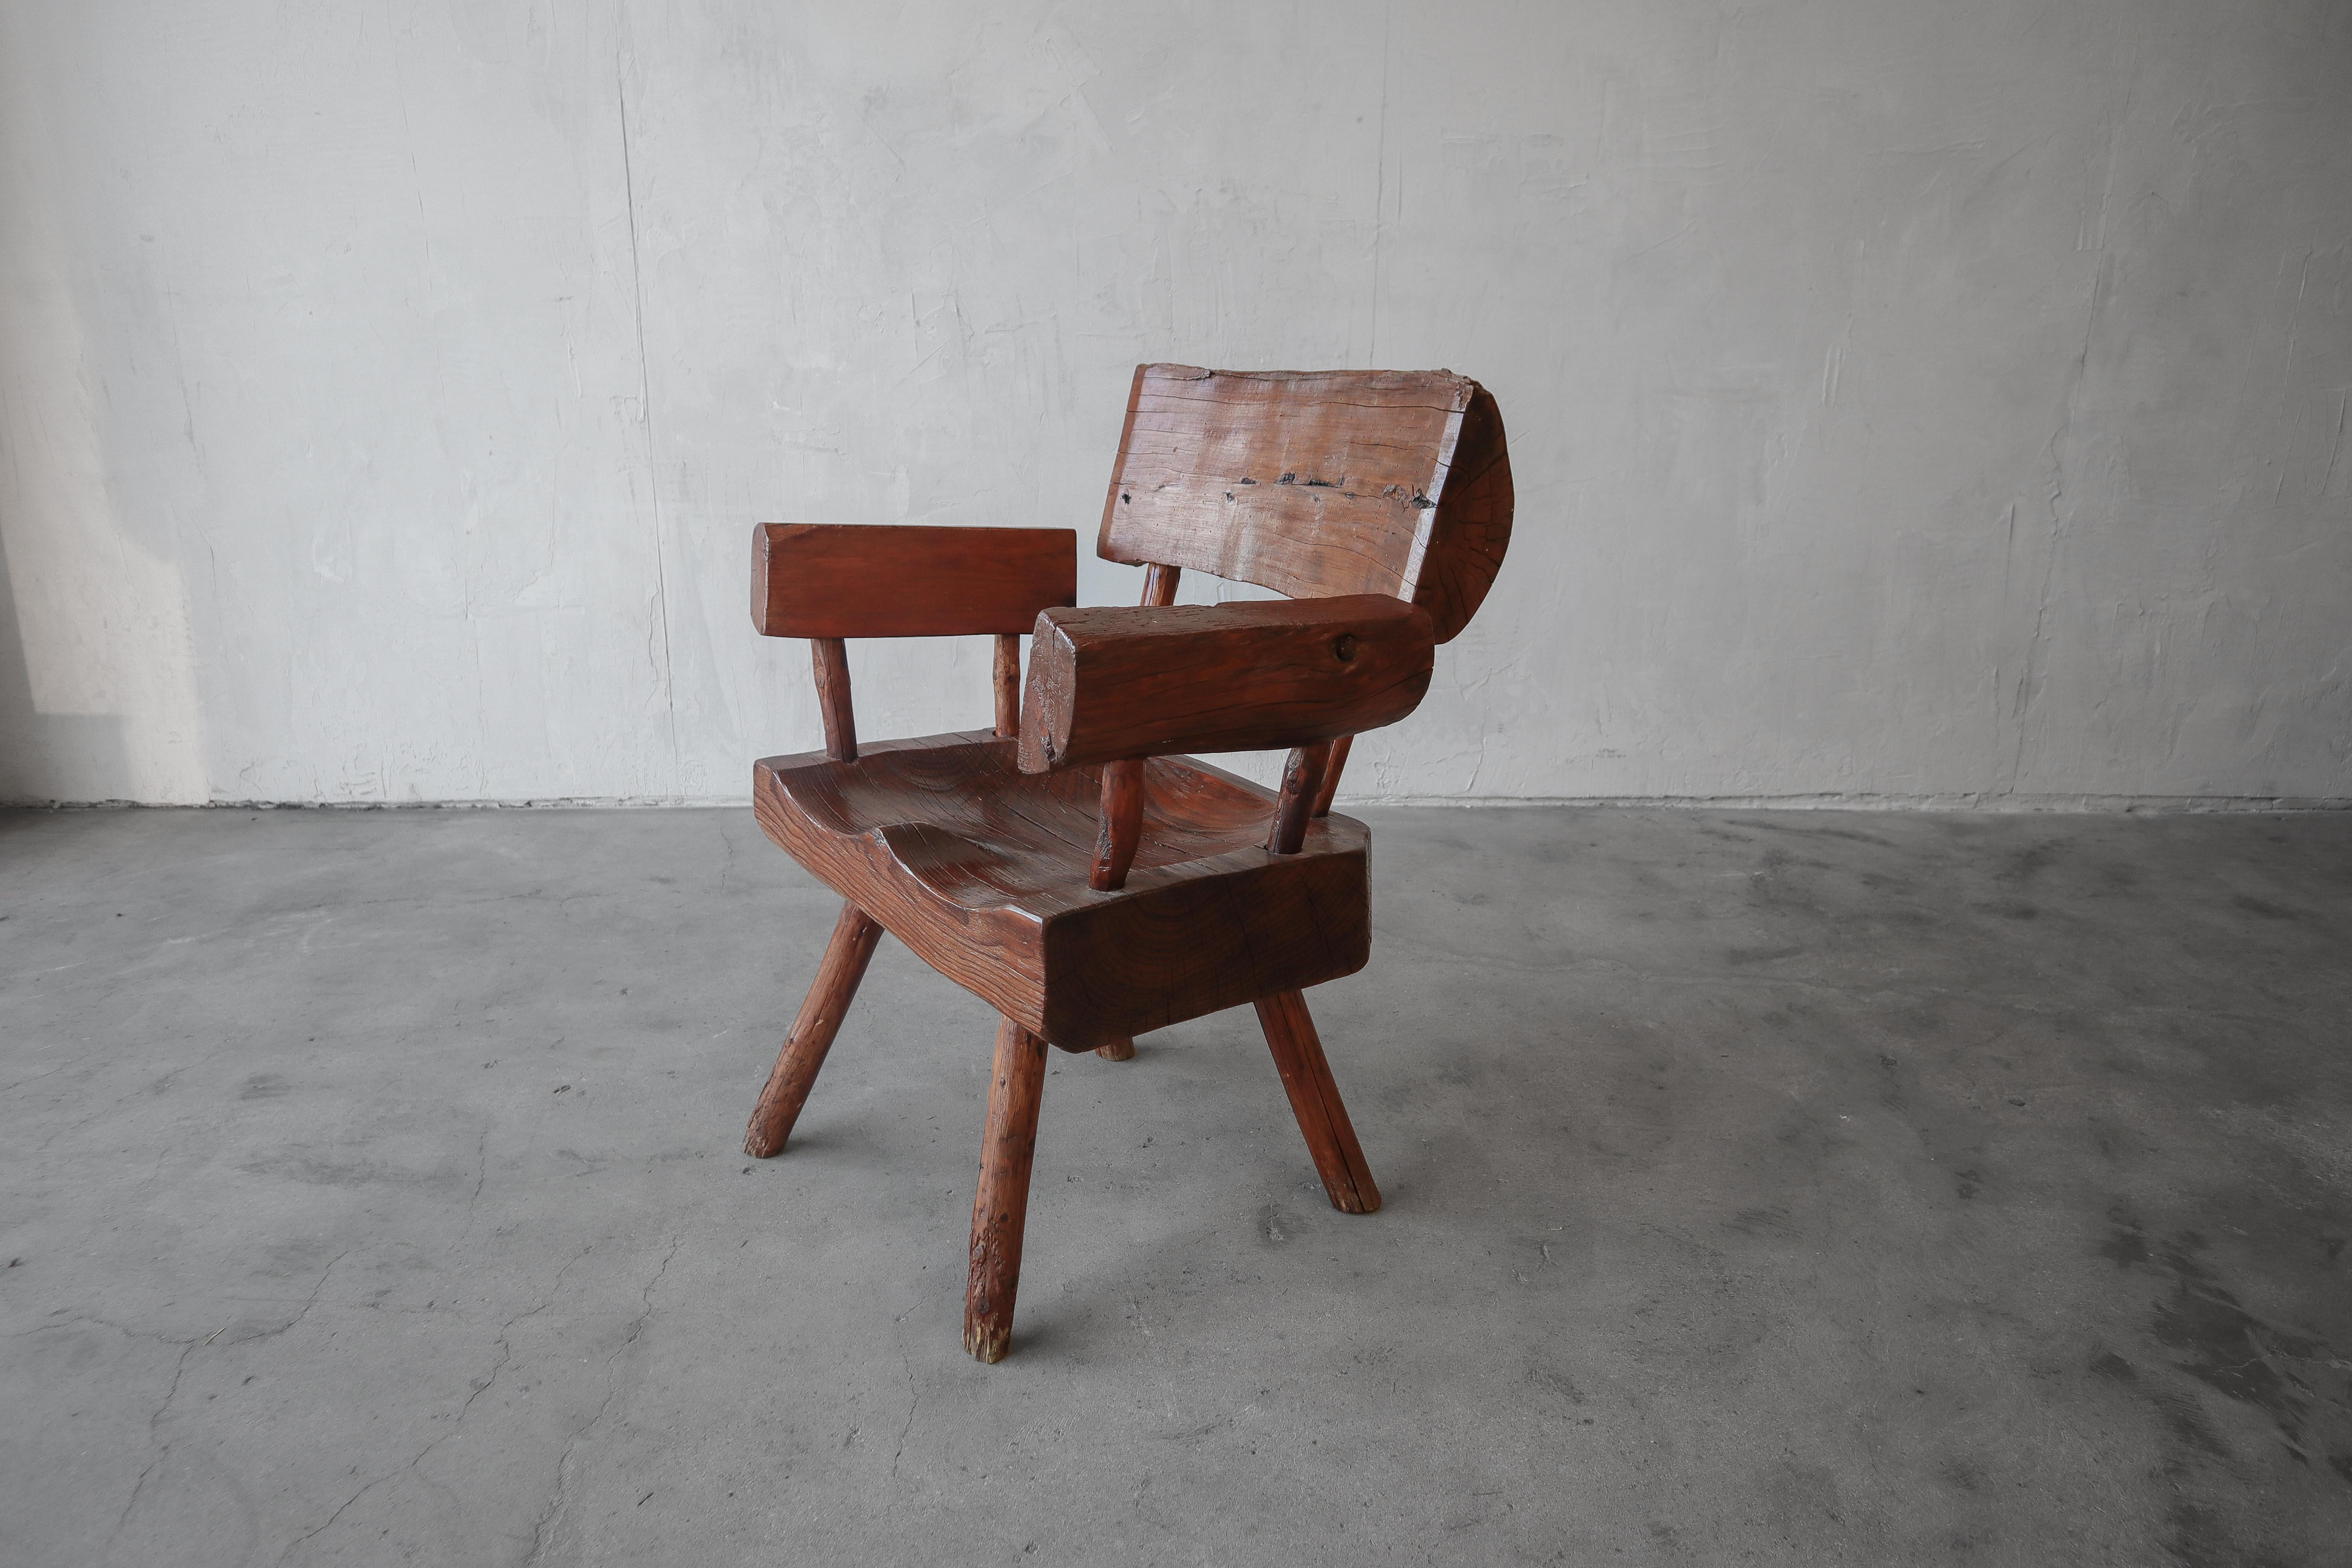 Toller, primitiver Live-Edge-Stuhl. Perfektes Eckstück als Ergänzung zu jeder Wabisabi-, minimalistischen oder rustikalen Einrichtung.

Der Stuhl hat natürliche Einschlüsse und leichte Gebrauchsspuren, die seinen Charakter unterstreichen. Es ist